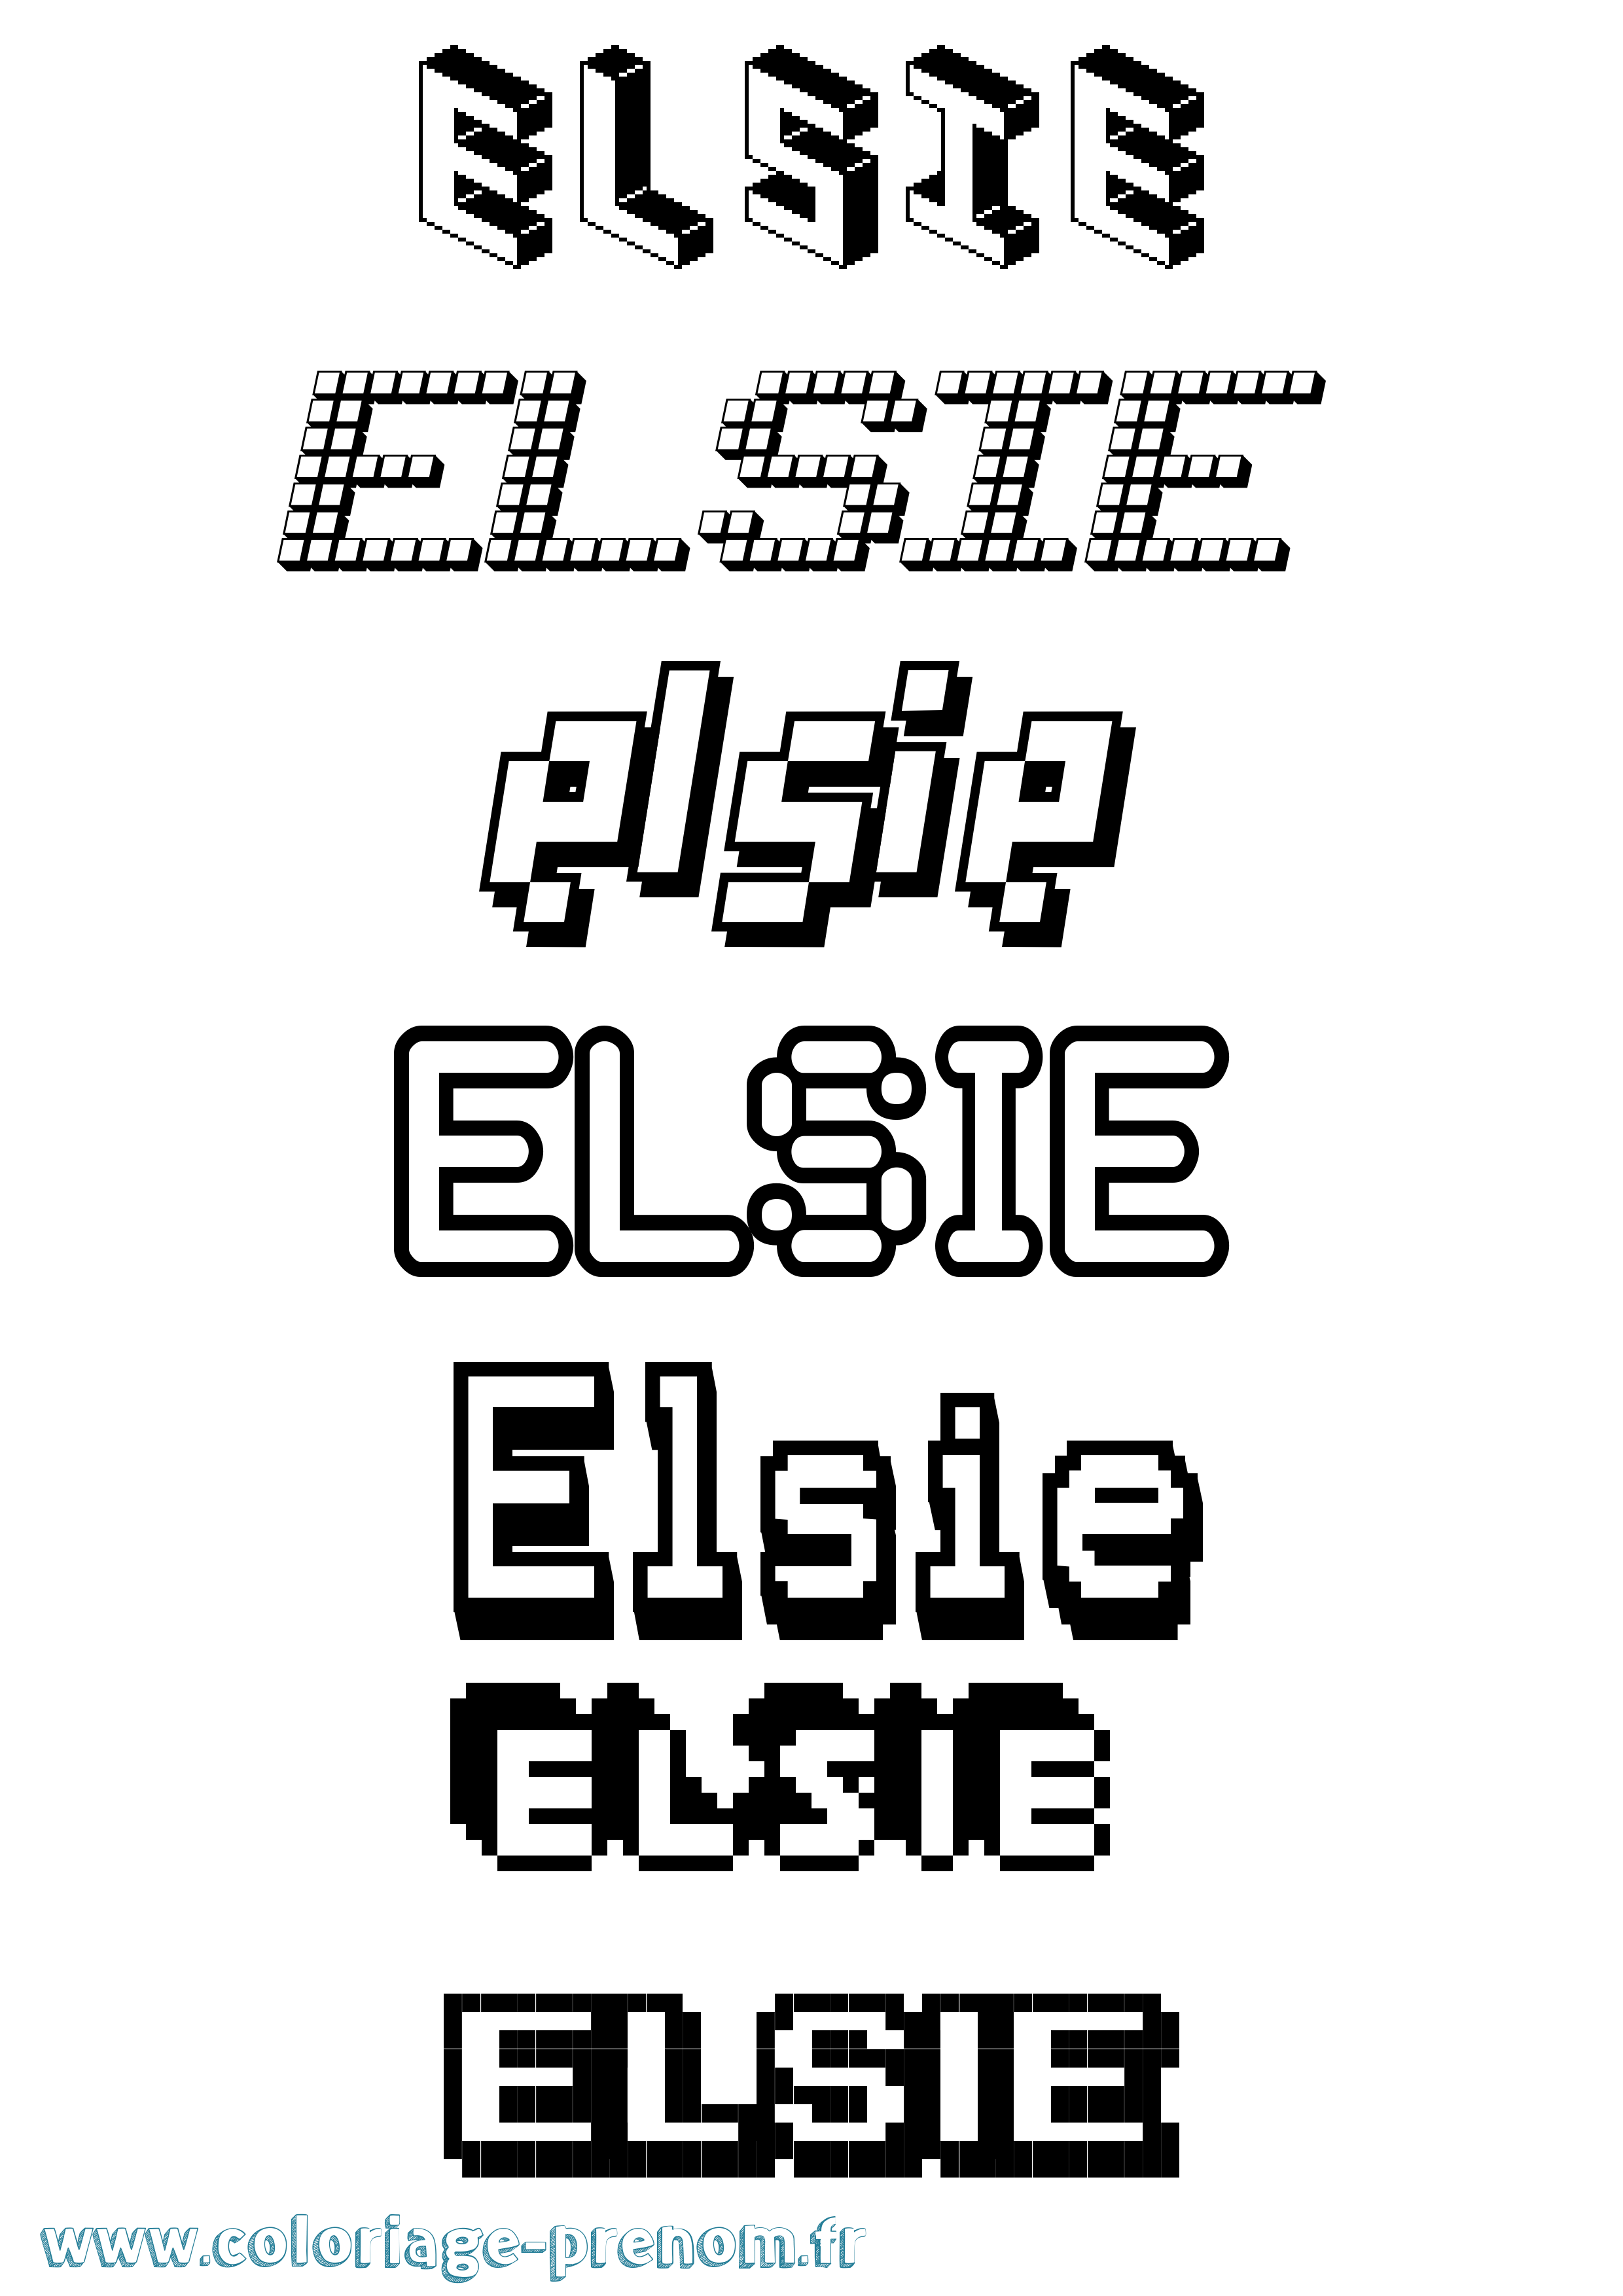 Coloriage prénom Elsie Pixel